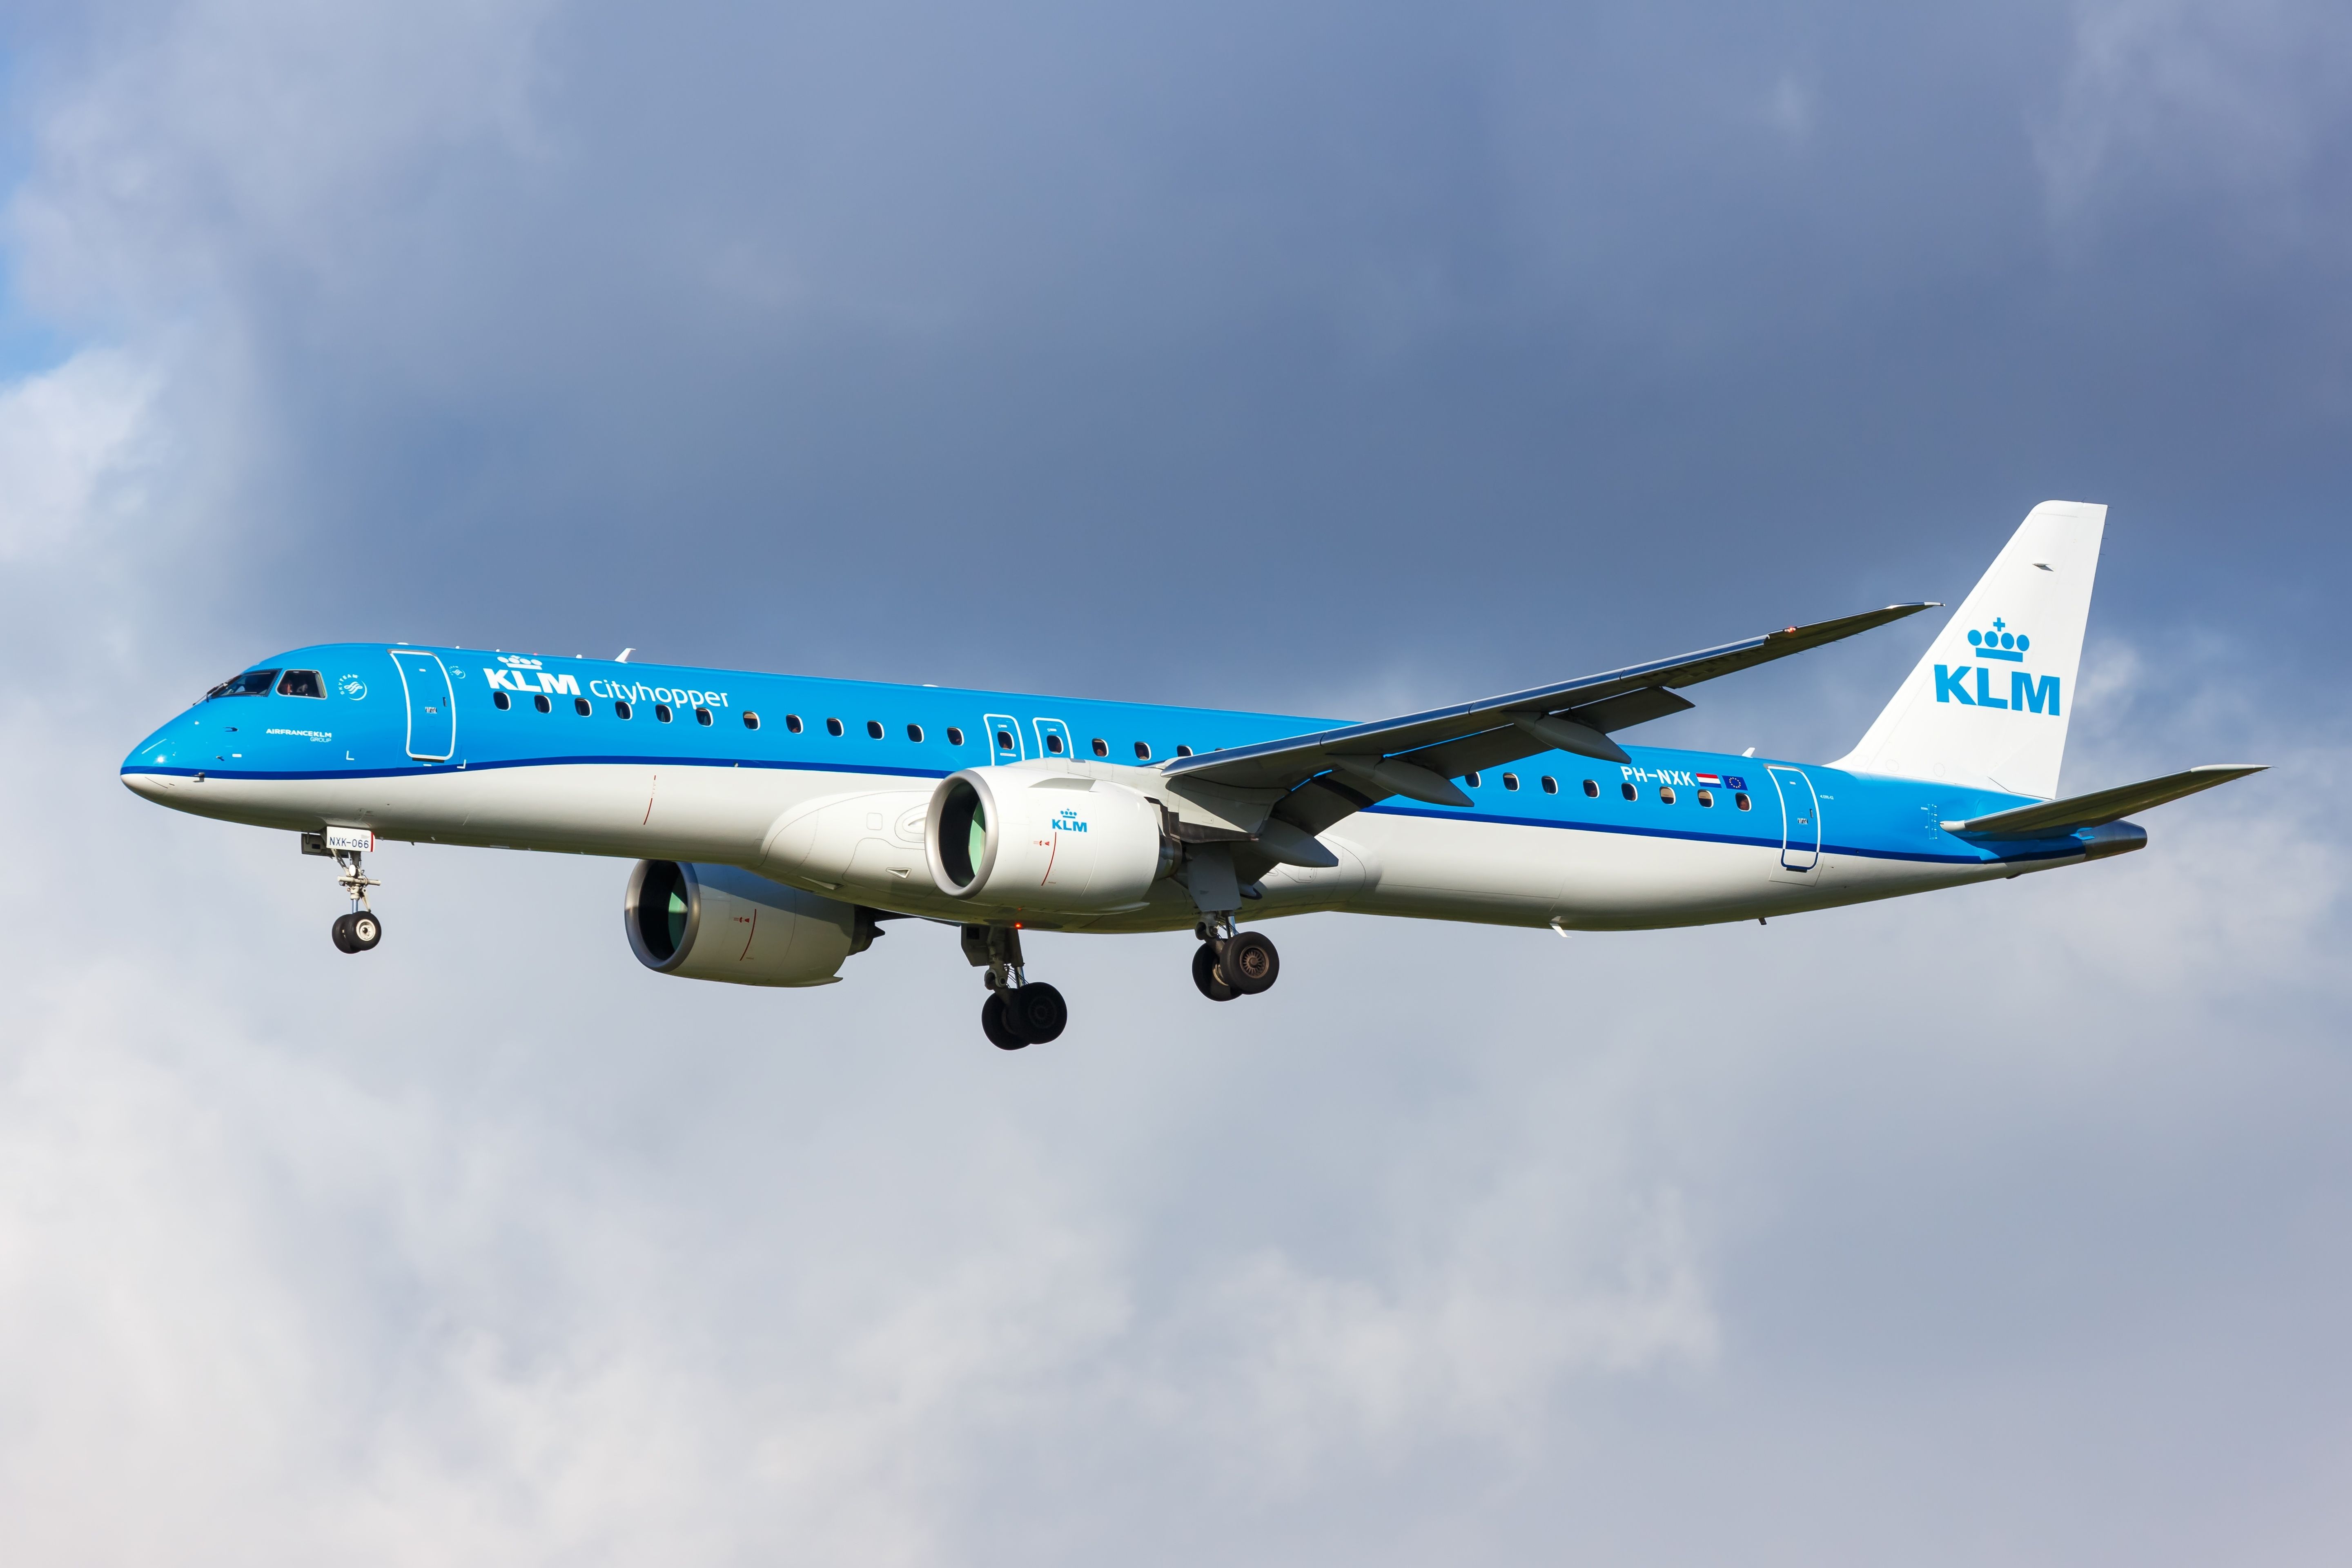 KLM Cityhopper Embraer E195-E2